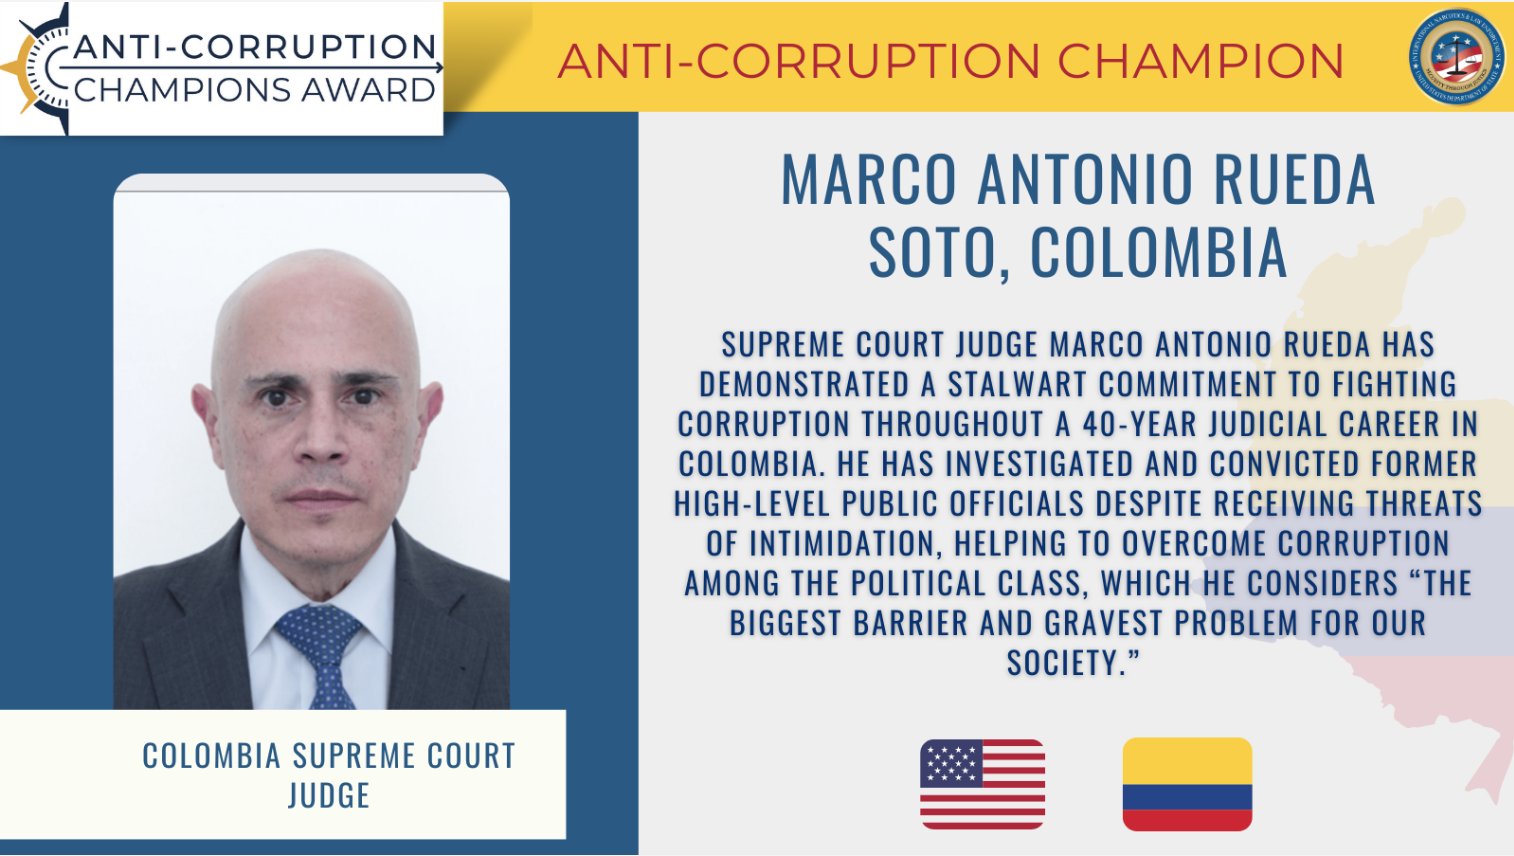 Él es el magistrado de la Corte Suprema de Justicia de Colombia que ganó importante premio anticorrupción en Estados Unidos